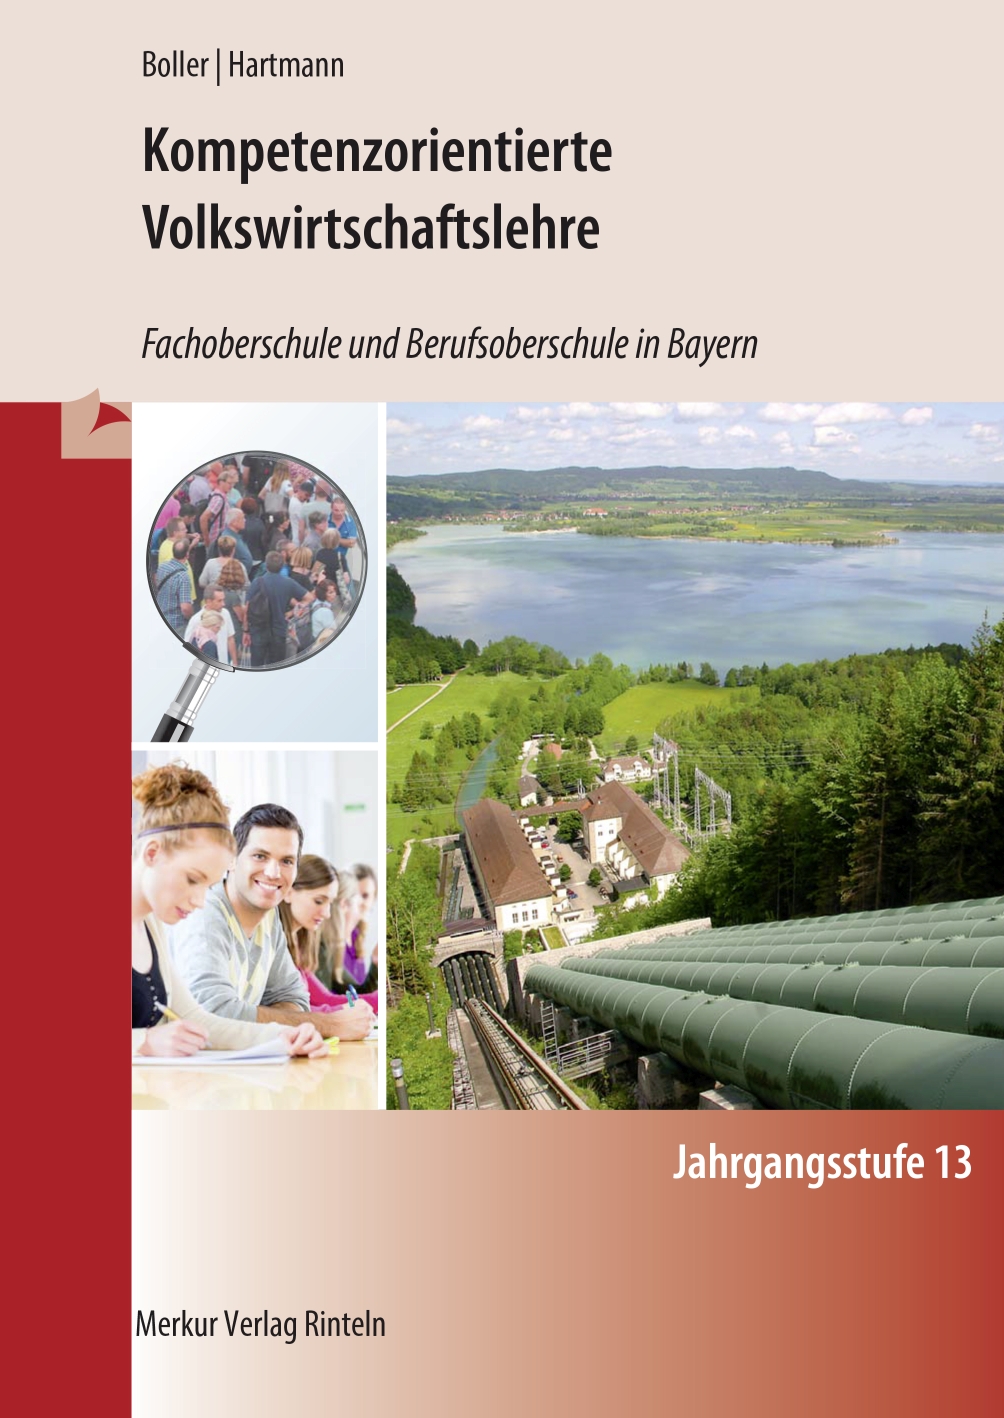 Kompetenzorientierte Volkswirtschaftslehre Fachoberschule und Berufsoberschule in Bayern Jahrgangsstufe 13